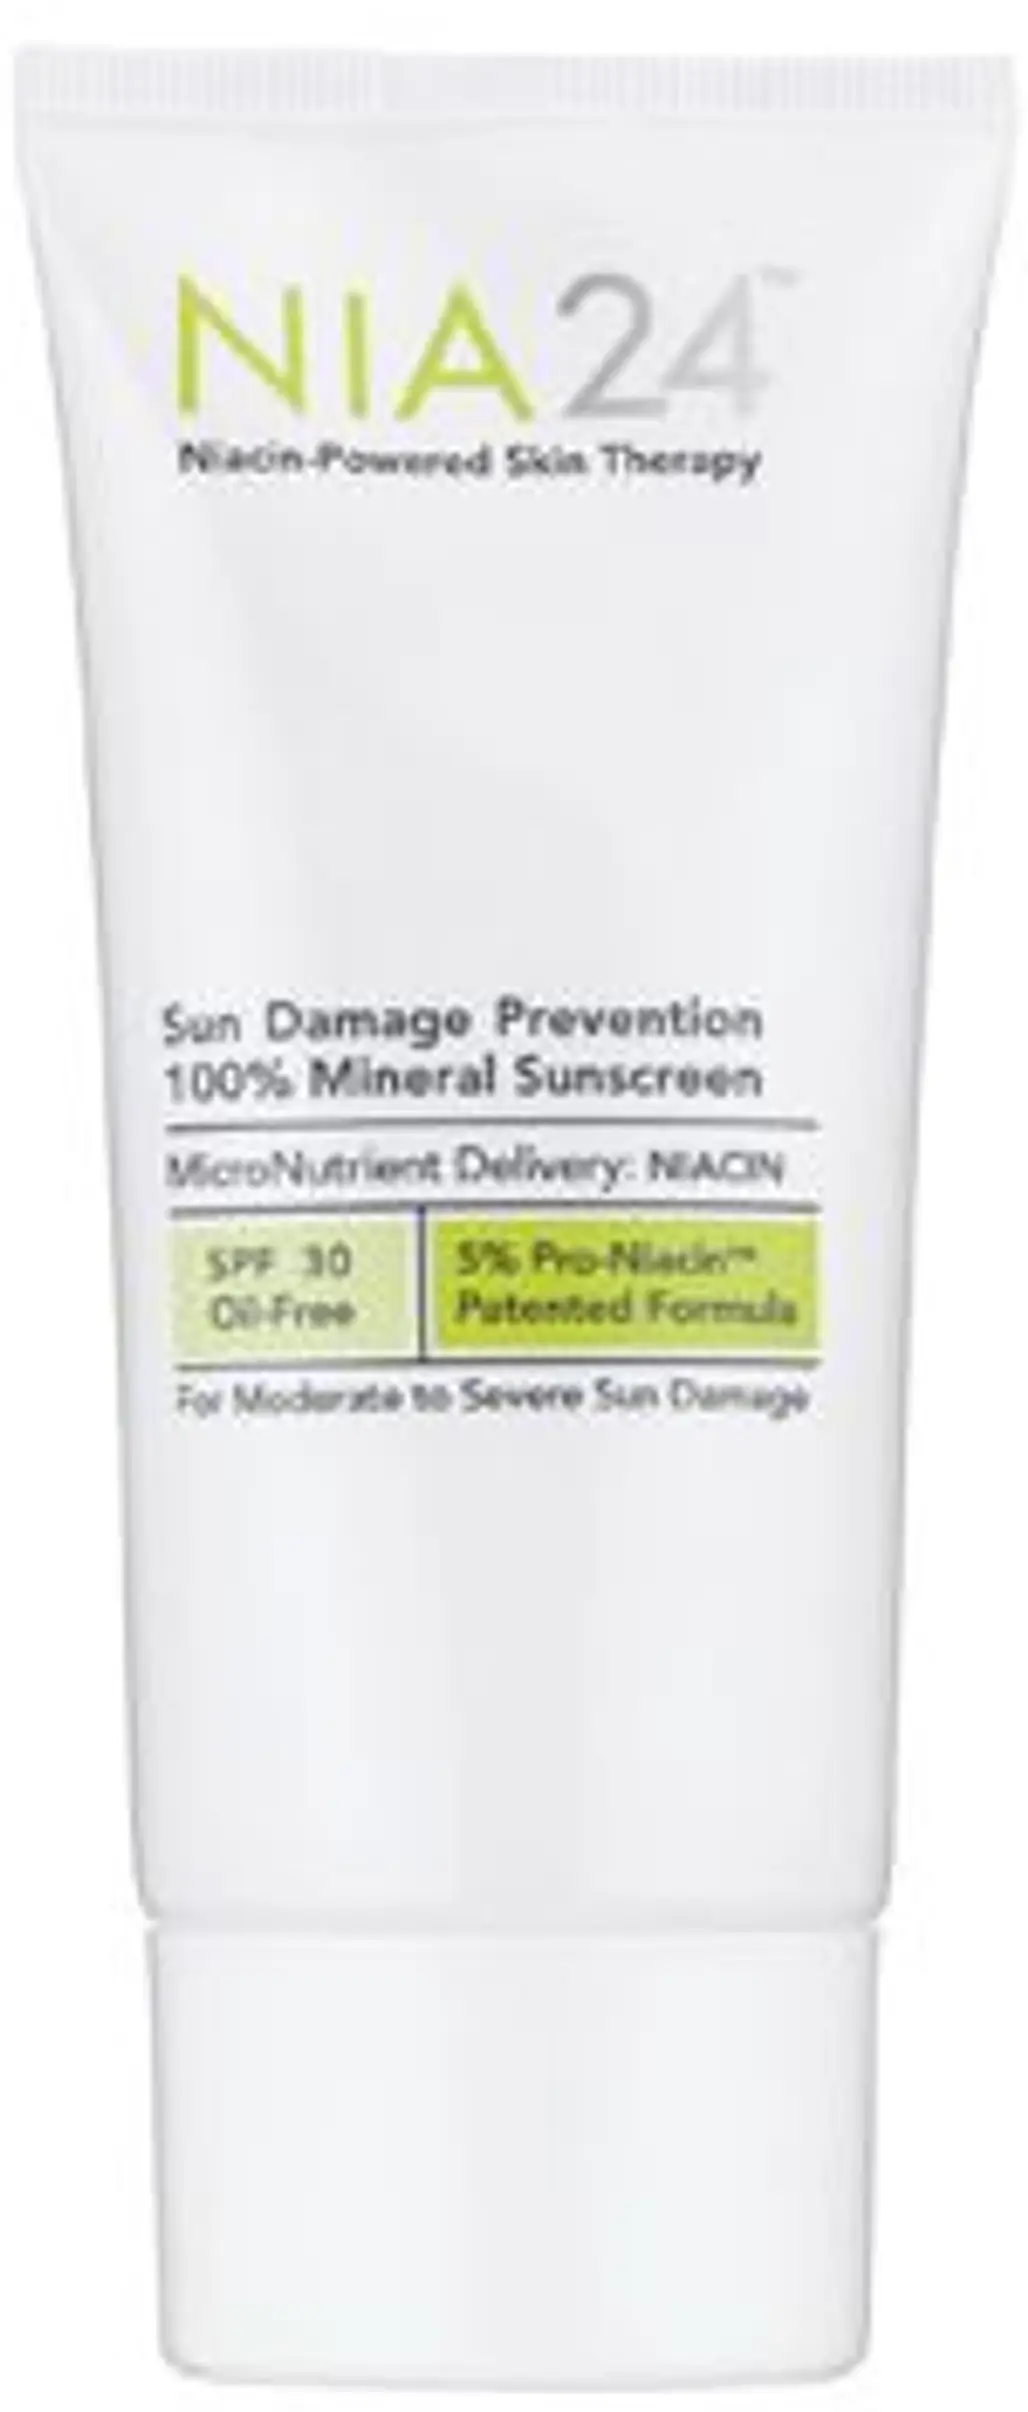 NIA24 Sun Damage Prevention SPF 30